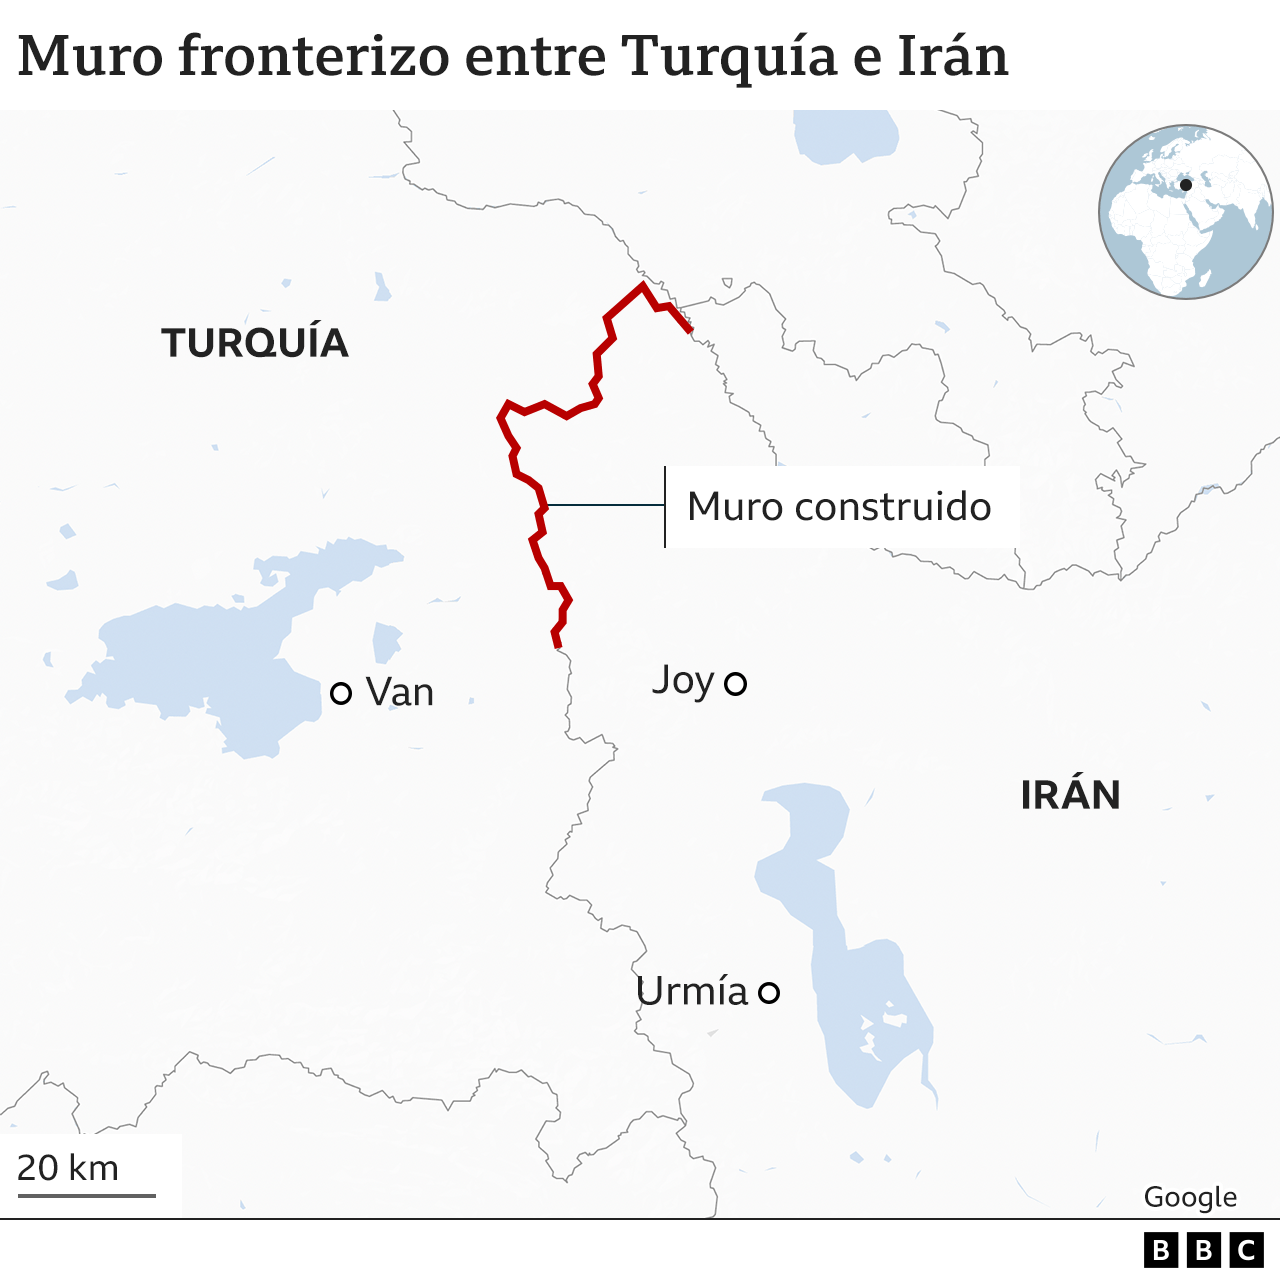 El mapa muestra cómo el muro fronterizo se extiende más de la mitad de la longitud de la frontera de Turquía con Irán.